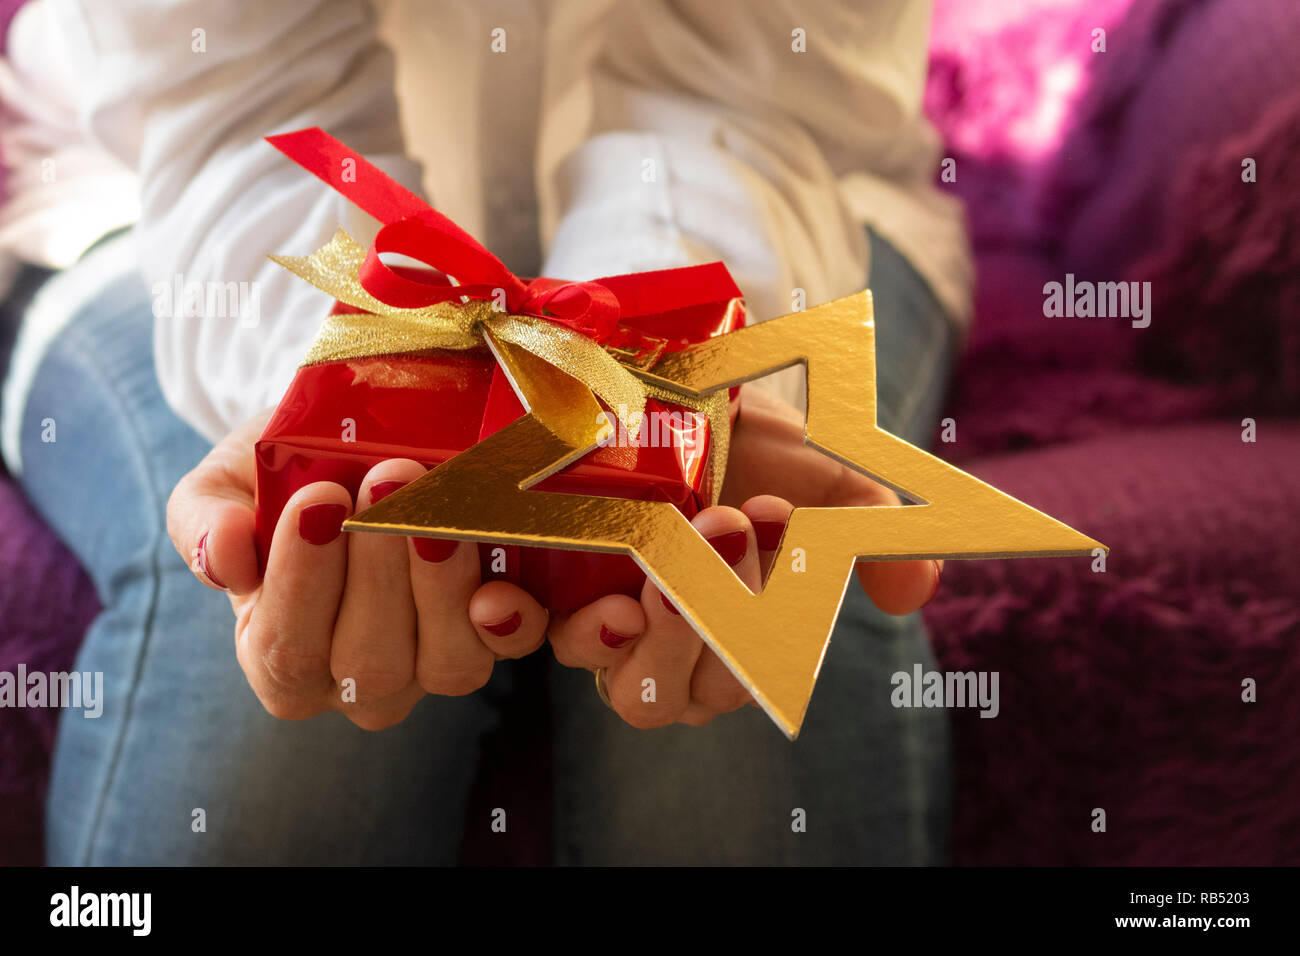 Weihnachts- oder Geburtstagsgeschenk in roter Farbe Stockfoto